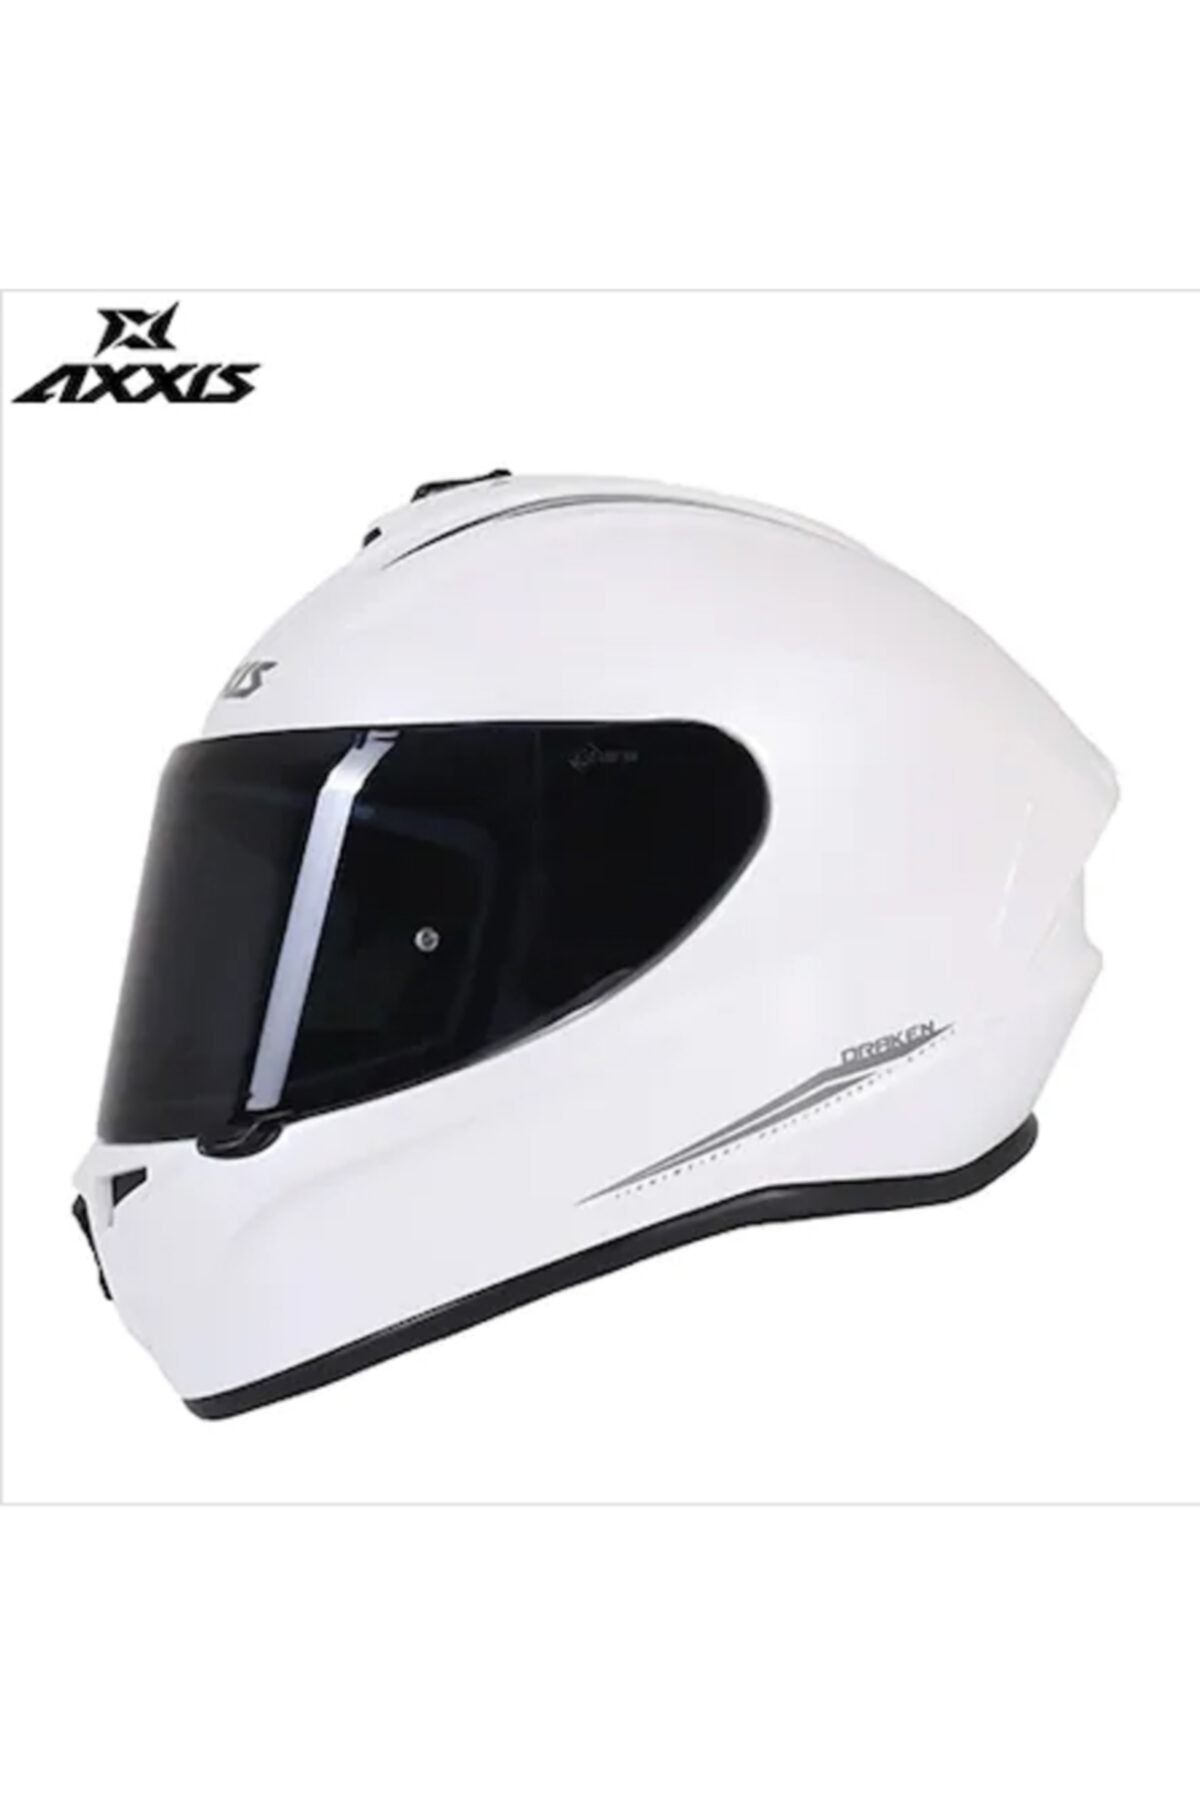 Axxis Draken Solid Kapalı Motosiklet Kaskı - Beyaz - Şeffaf Cam